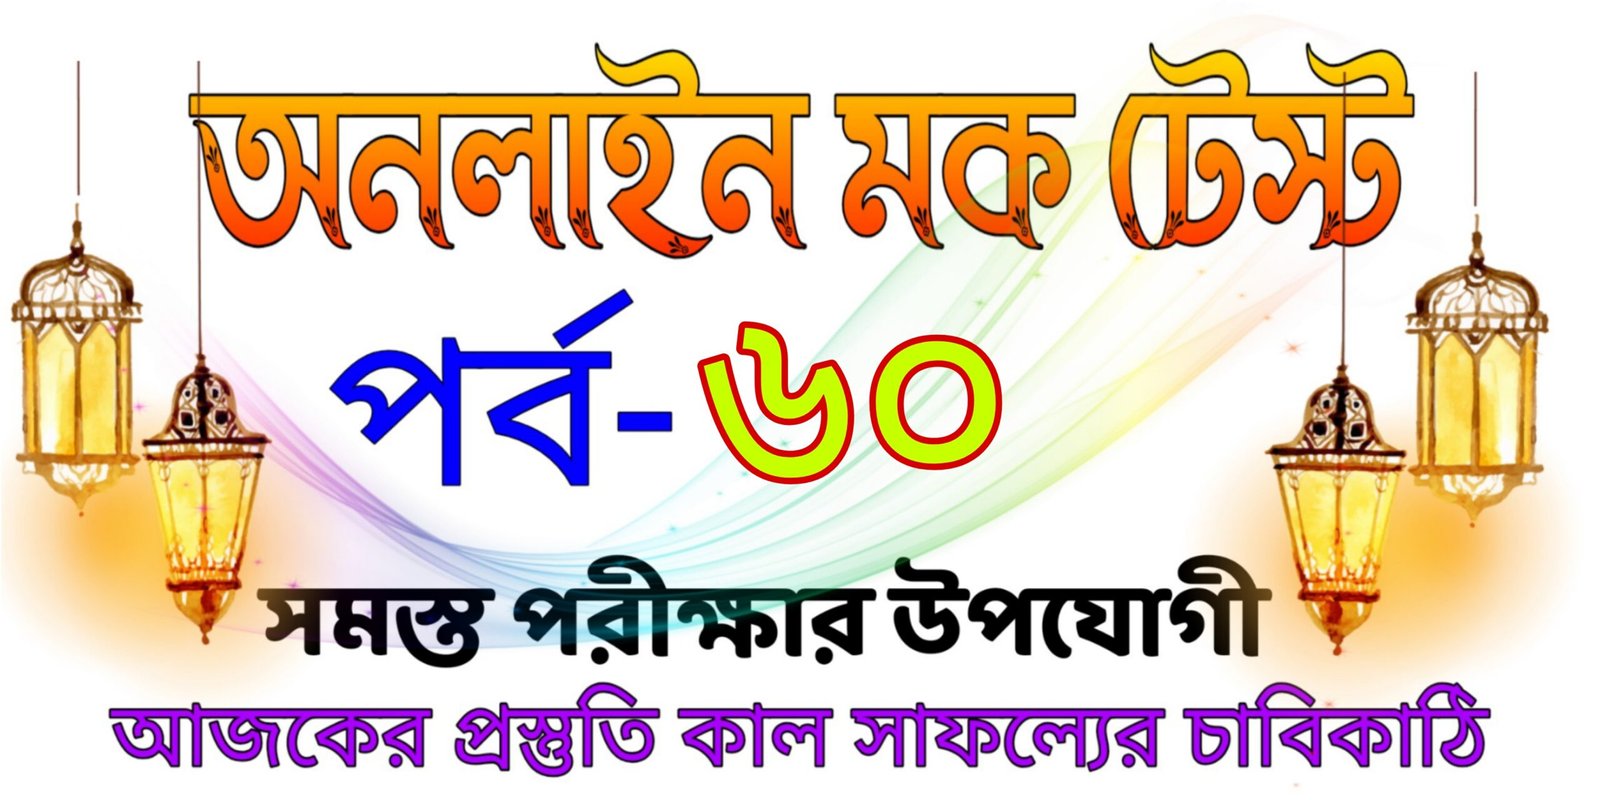 Mock test quiz online in bangla part-60